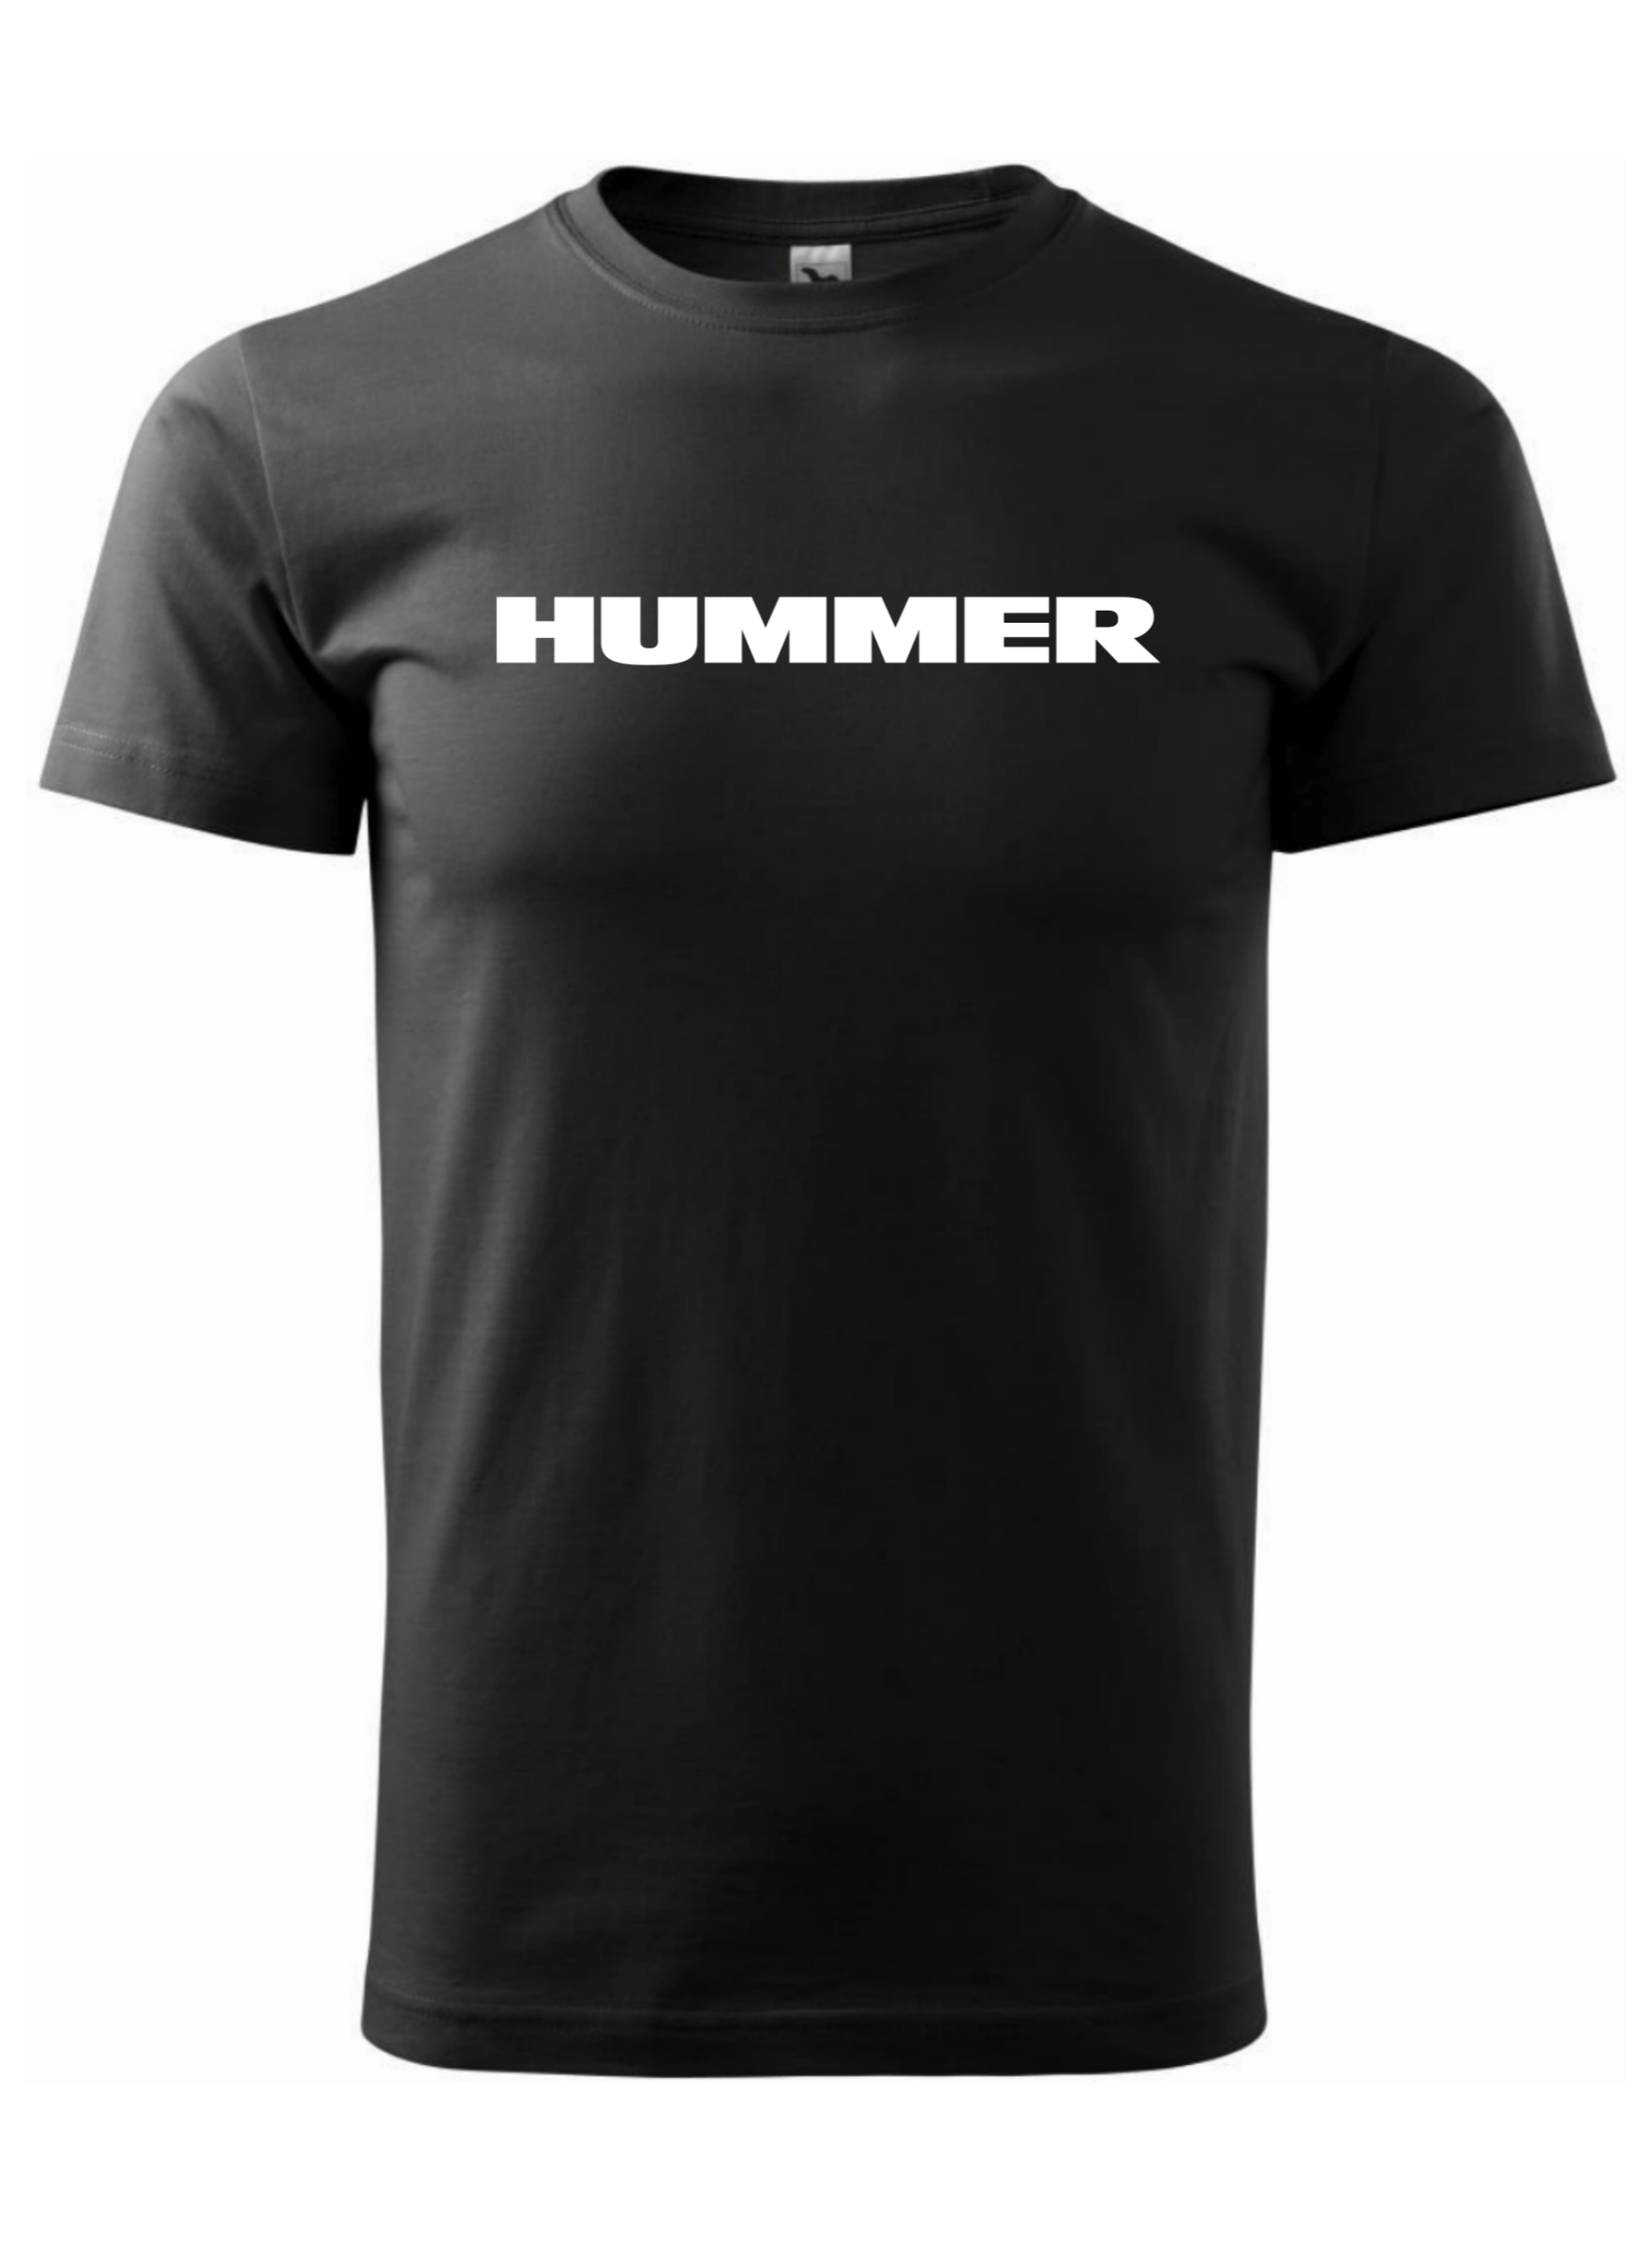 Pánské tričko s potiskem značky Hummer